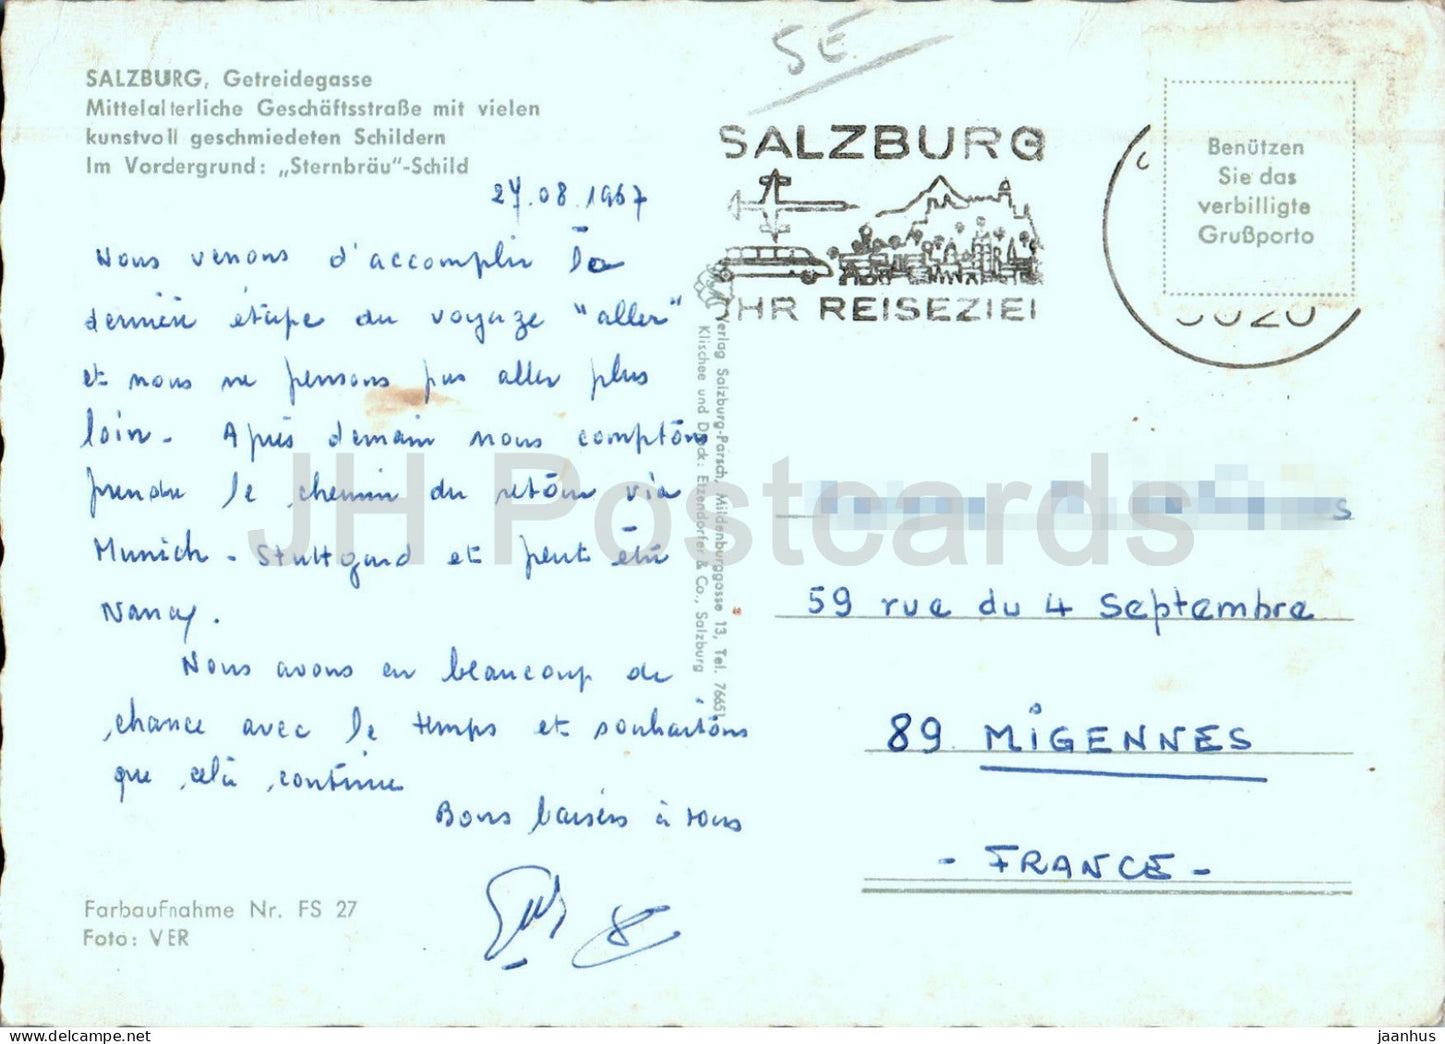 Salzburg – Getreidegasse – 27 – 1967 – Österreich – gebraucht